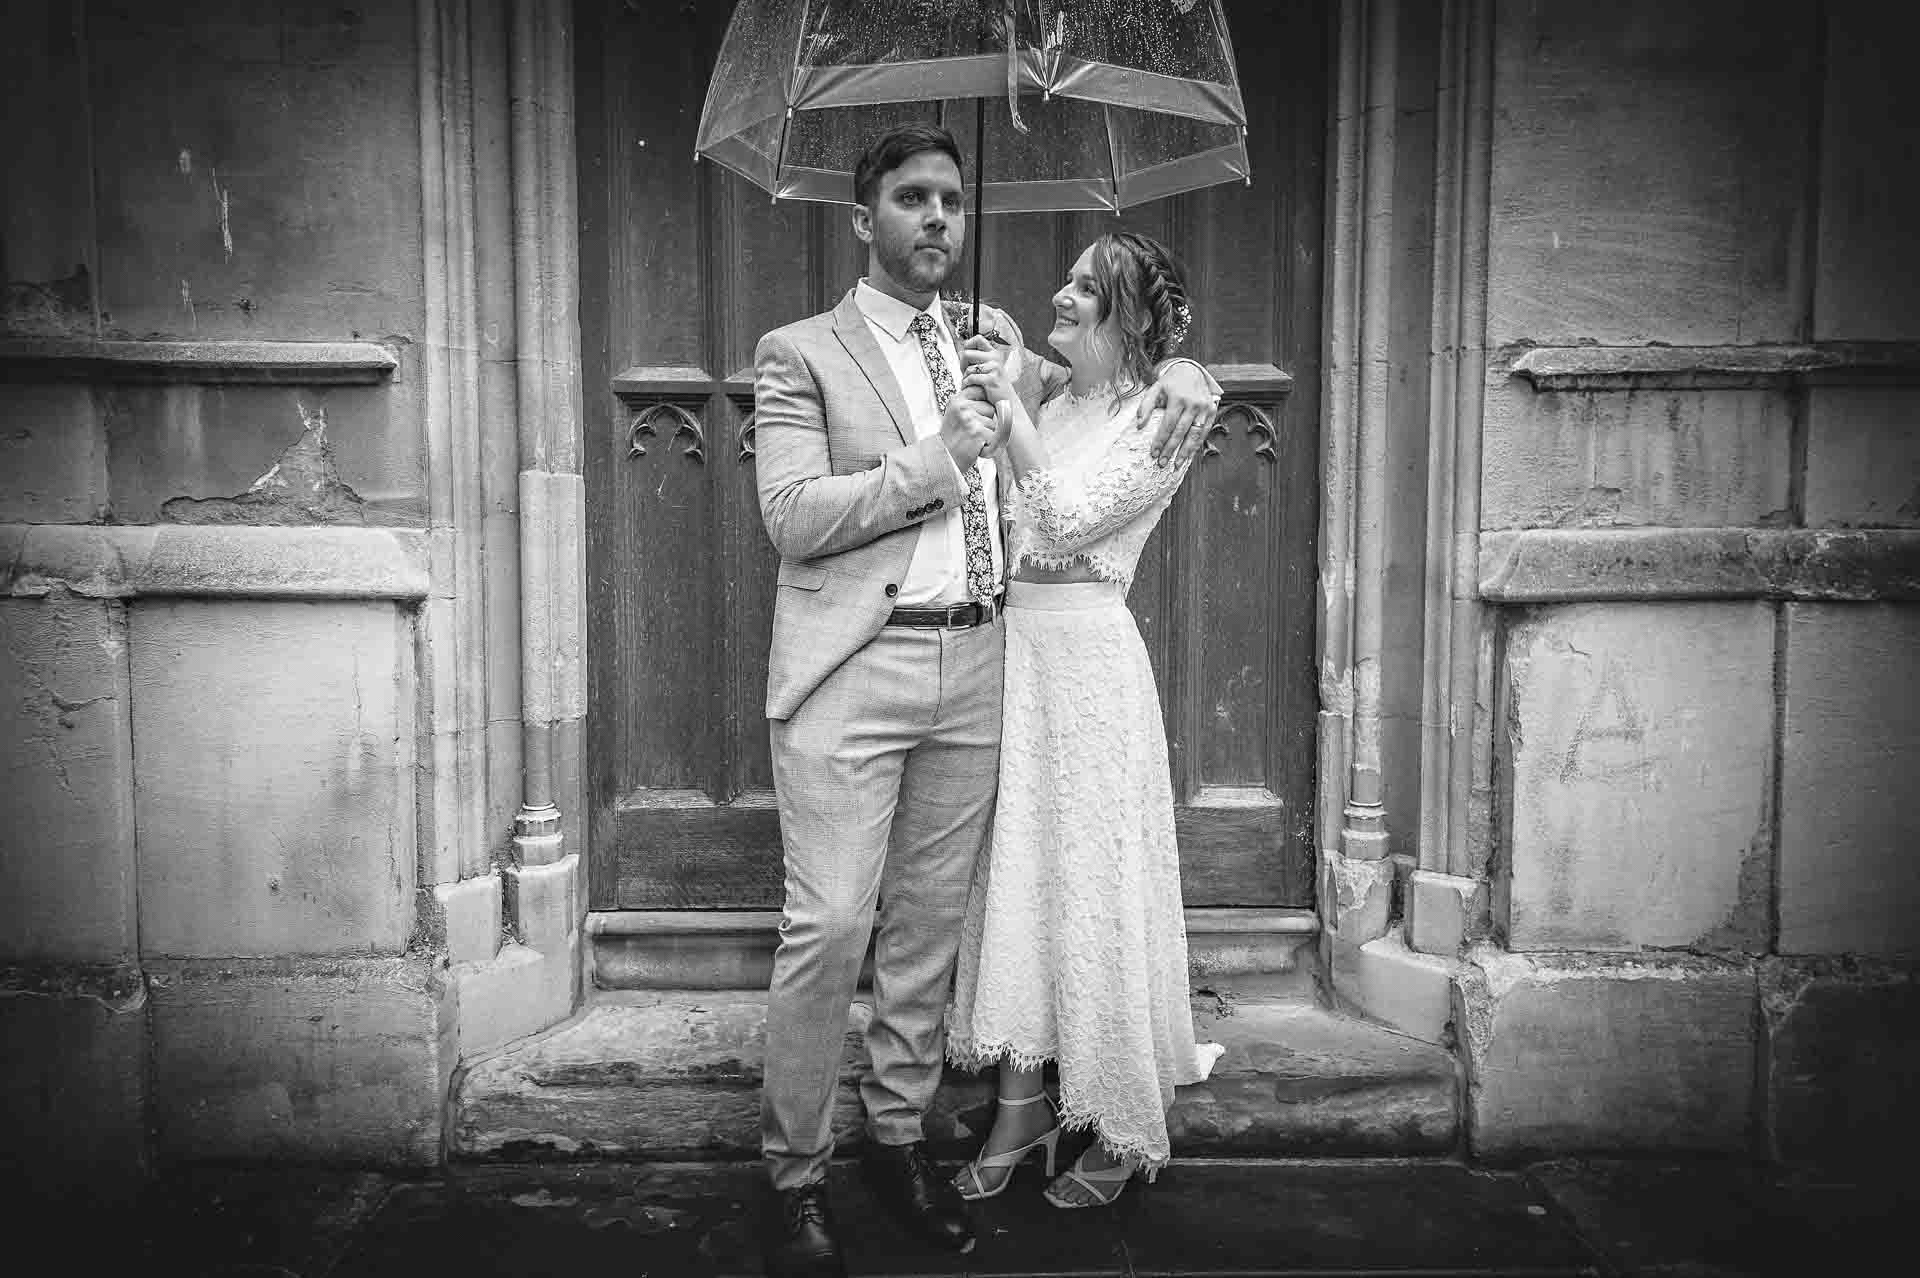 Wedding couple holding umbrella outside St Luke's Church in Chelsea, London